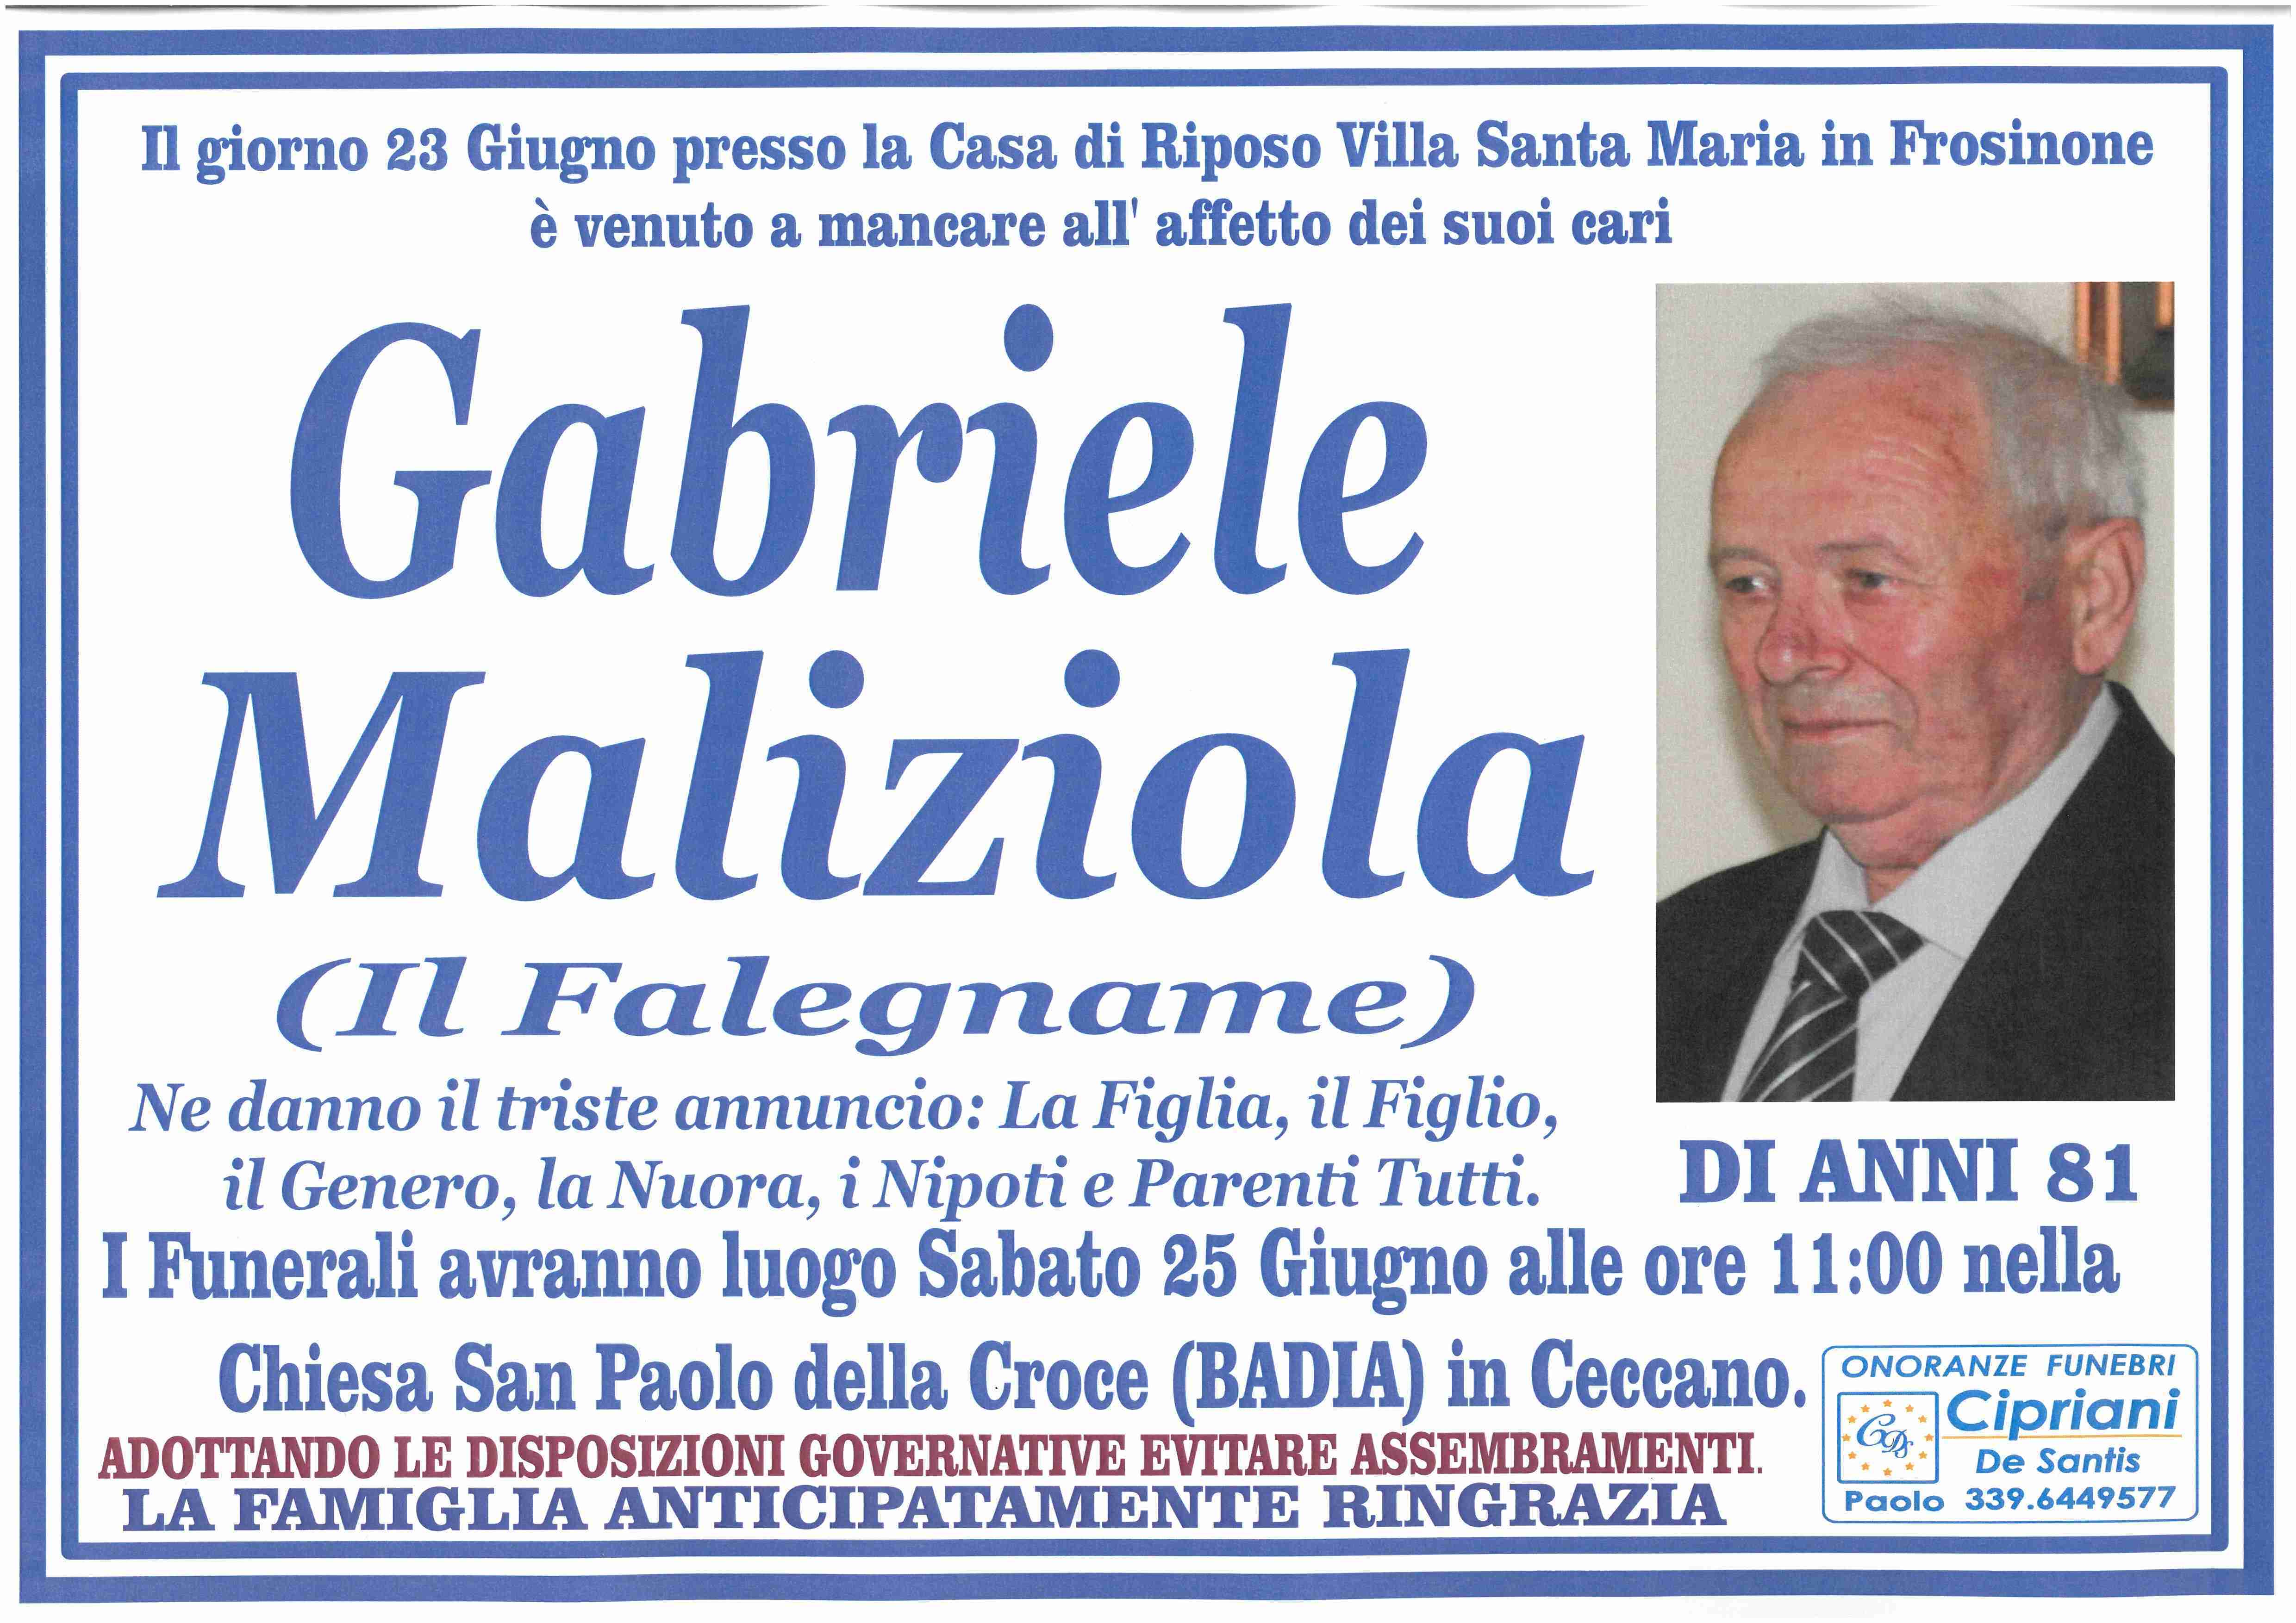 Gabriele Maliziola